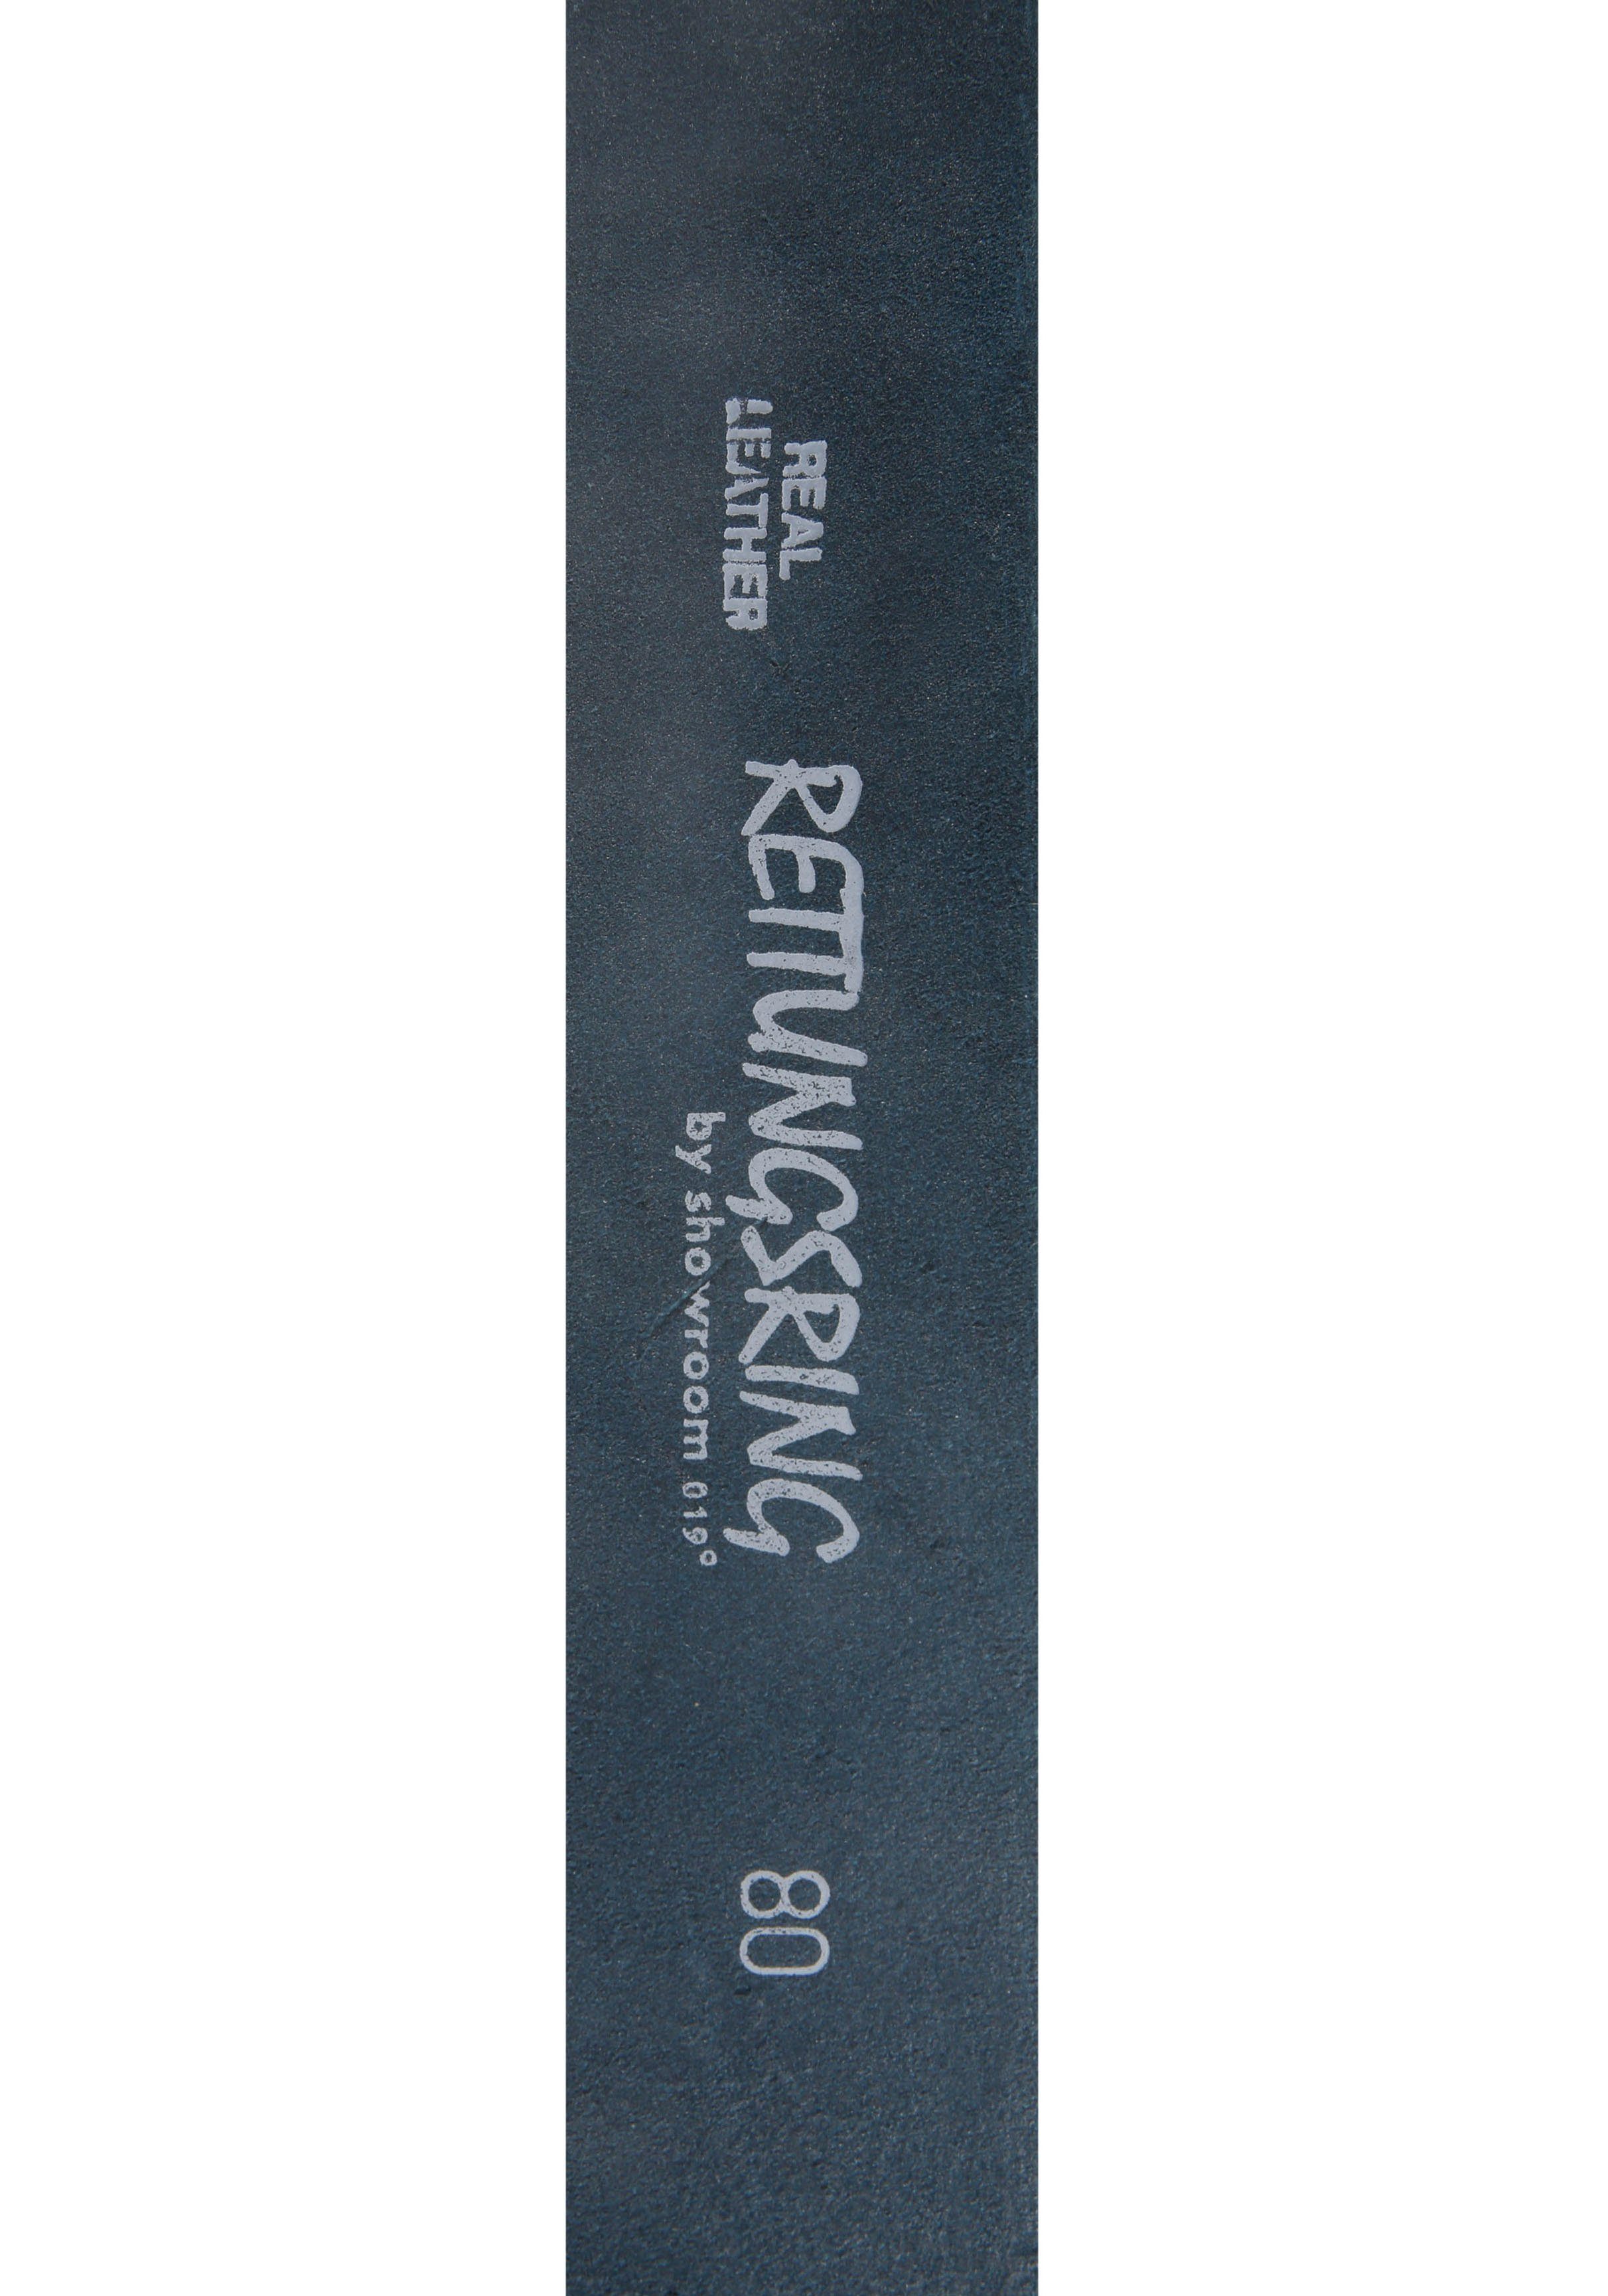 019° »Vollmond showroom Ledergürtel by Jeansblau«, austauschbarer RETTUNGSRING mit Silber« »Gump Schließe